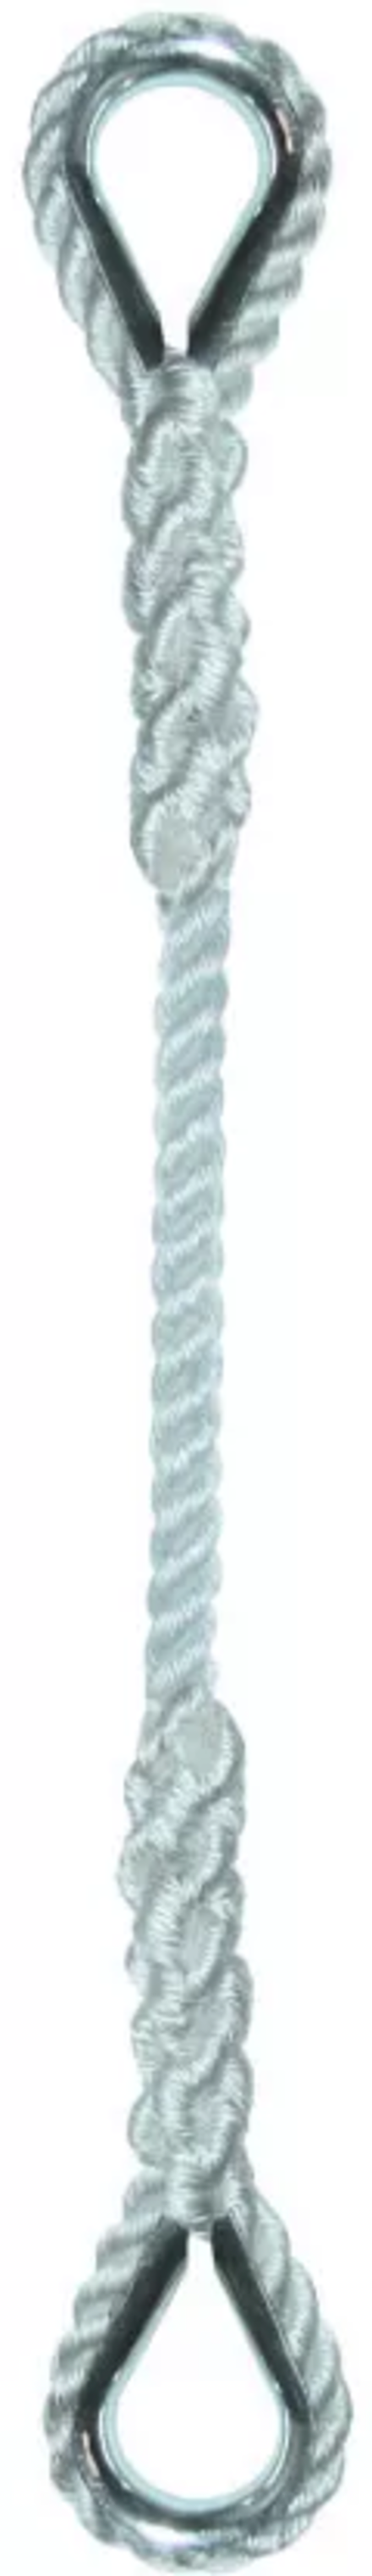 Élingue corde polypro d.10 mm cmu 138 kg 2 boucles cossées long 1 m LEVAC - 4405F